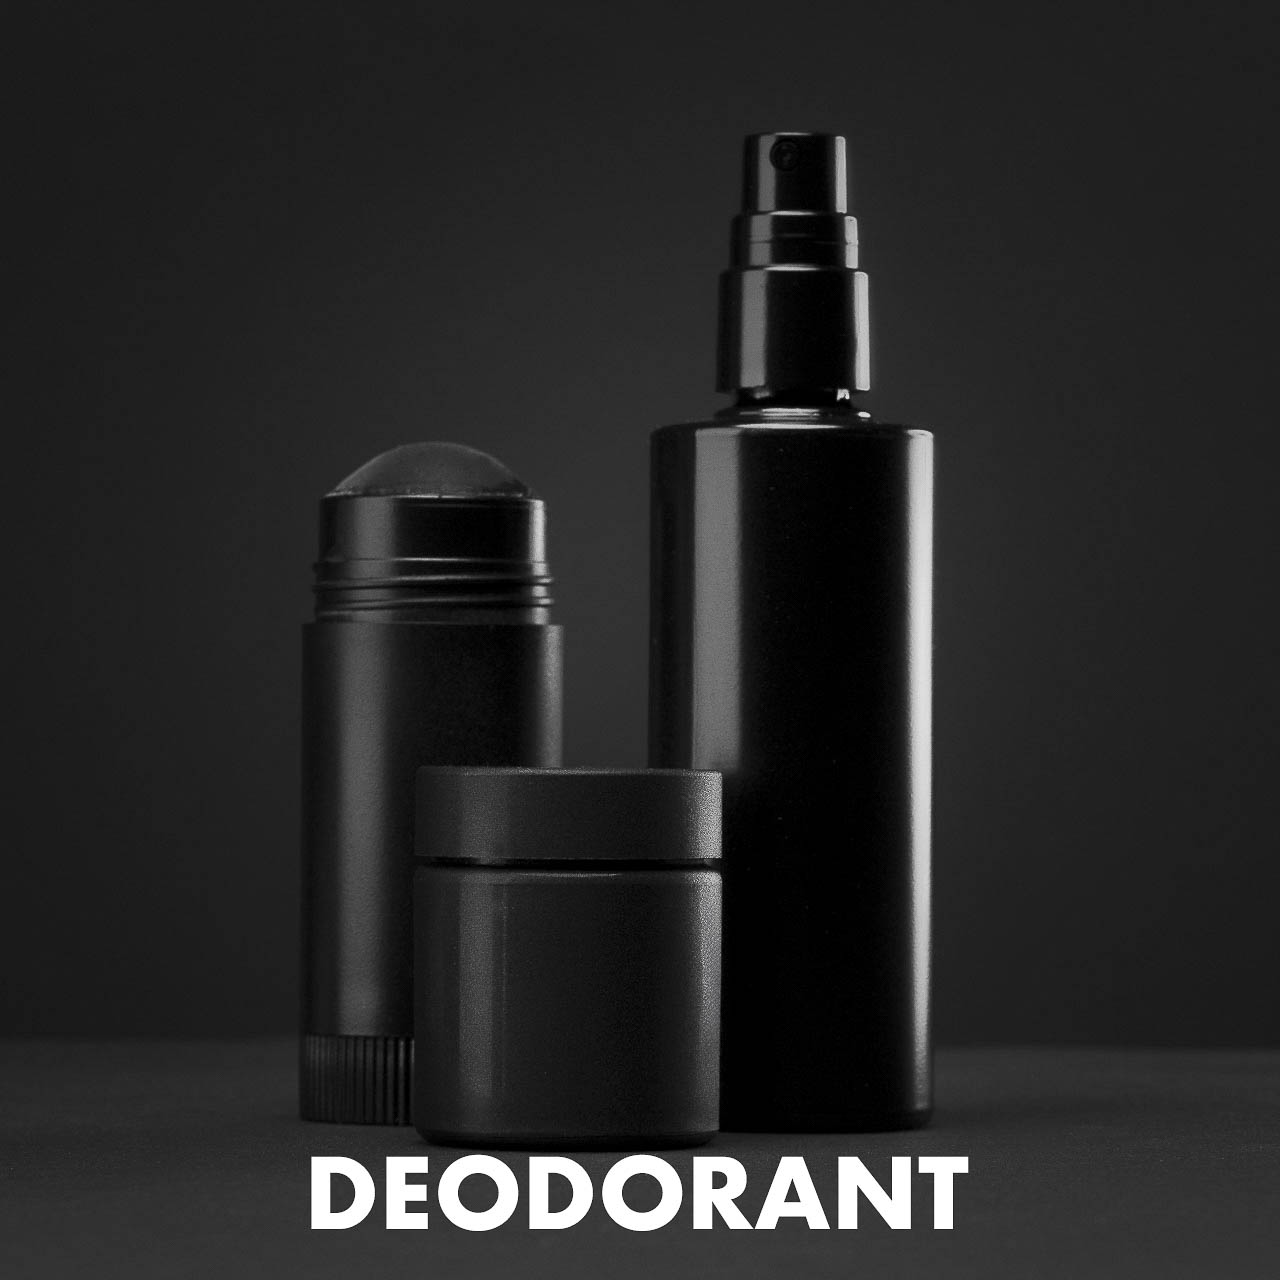 Ein Deodorant von blackbeards.